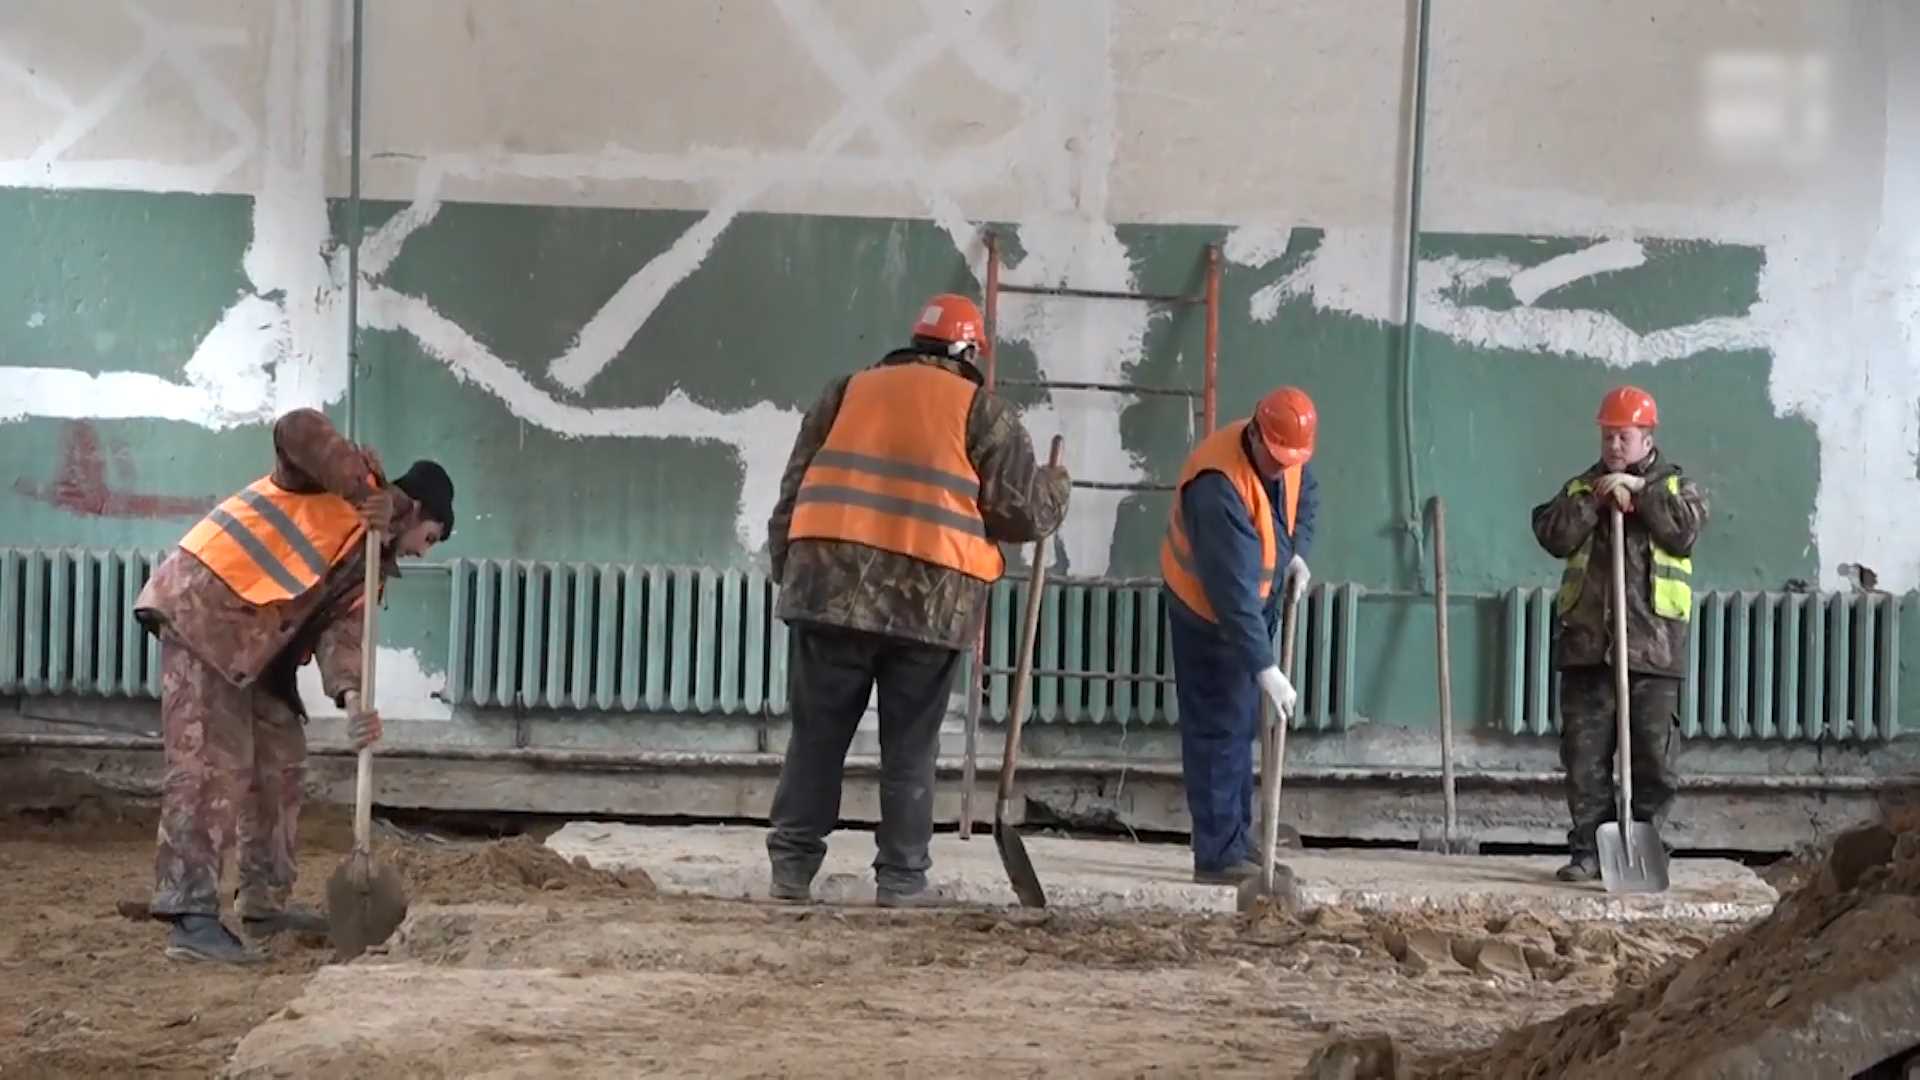 менее часа назад
                                                    
                              
              
                                                    
                    
                
                
                
                  
                    
                      Райцентр Костромской области будет пить чистую воду                    
                    
                      В Буе началась реконструкция насосно-фильтровальной станции.